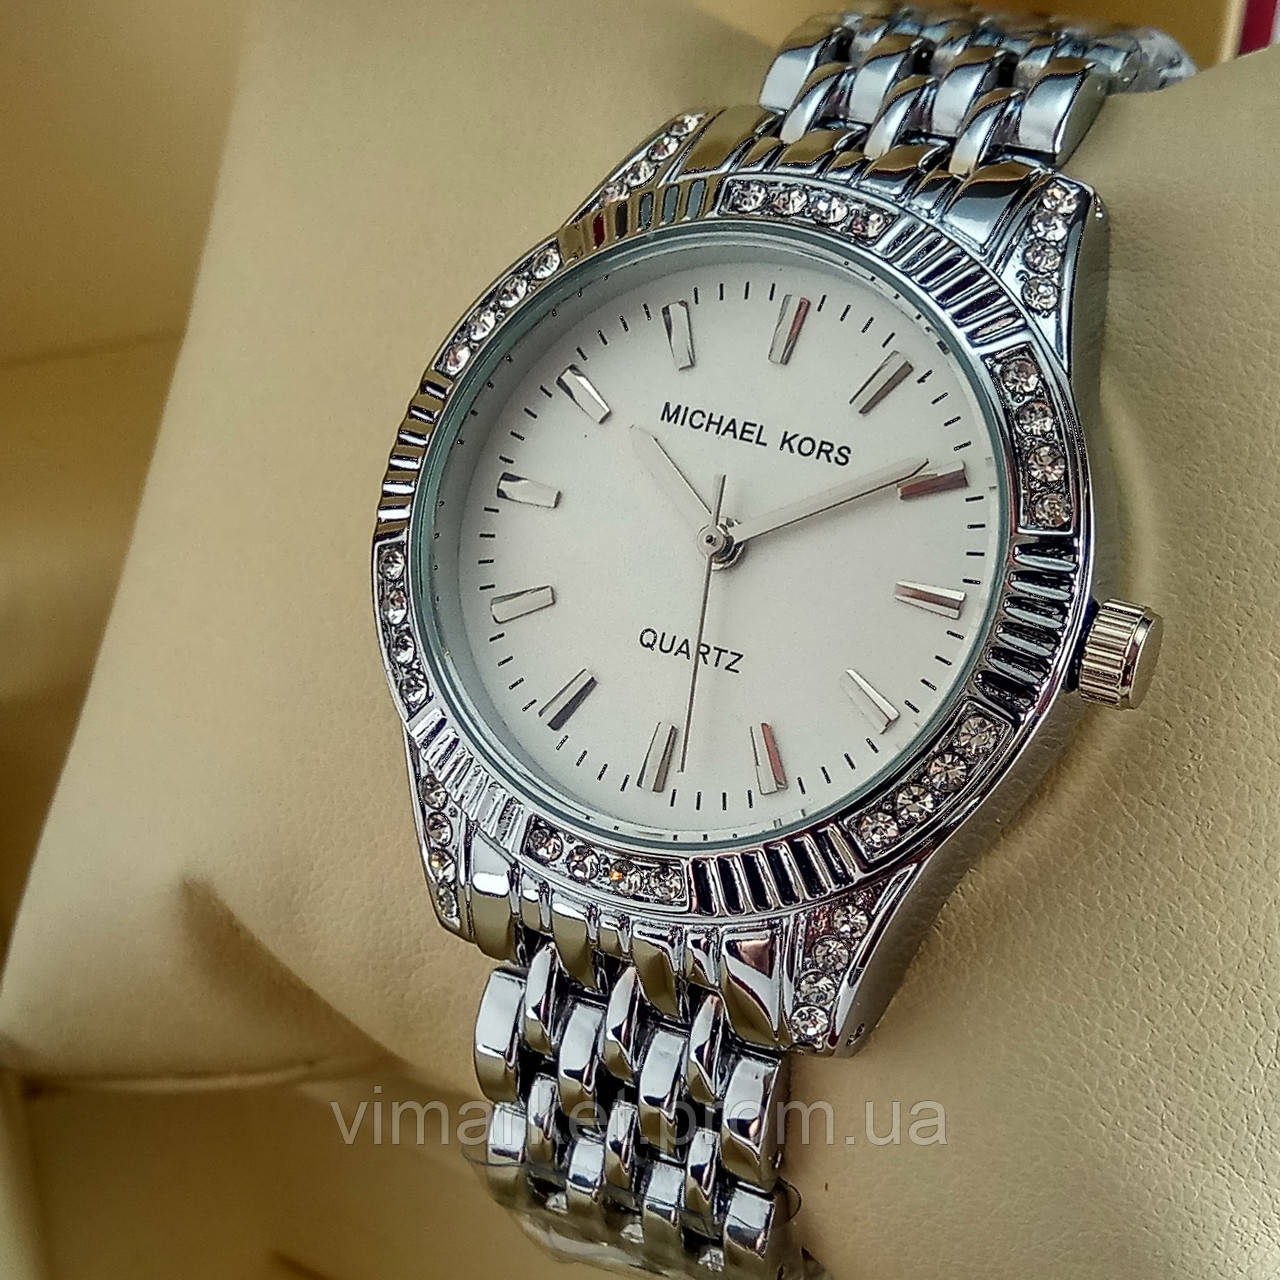 Жіночі кварцові наручні годинники Michael Kors MK-A152 на металевому браслеті срібного кольору білий цифербл